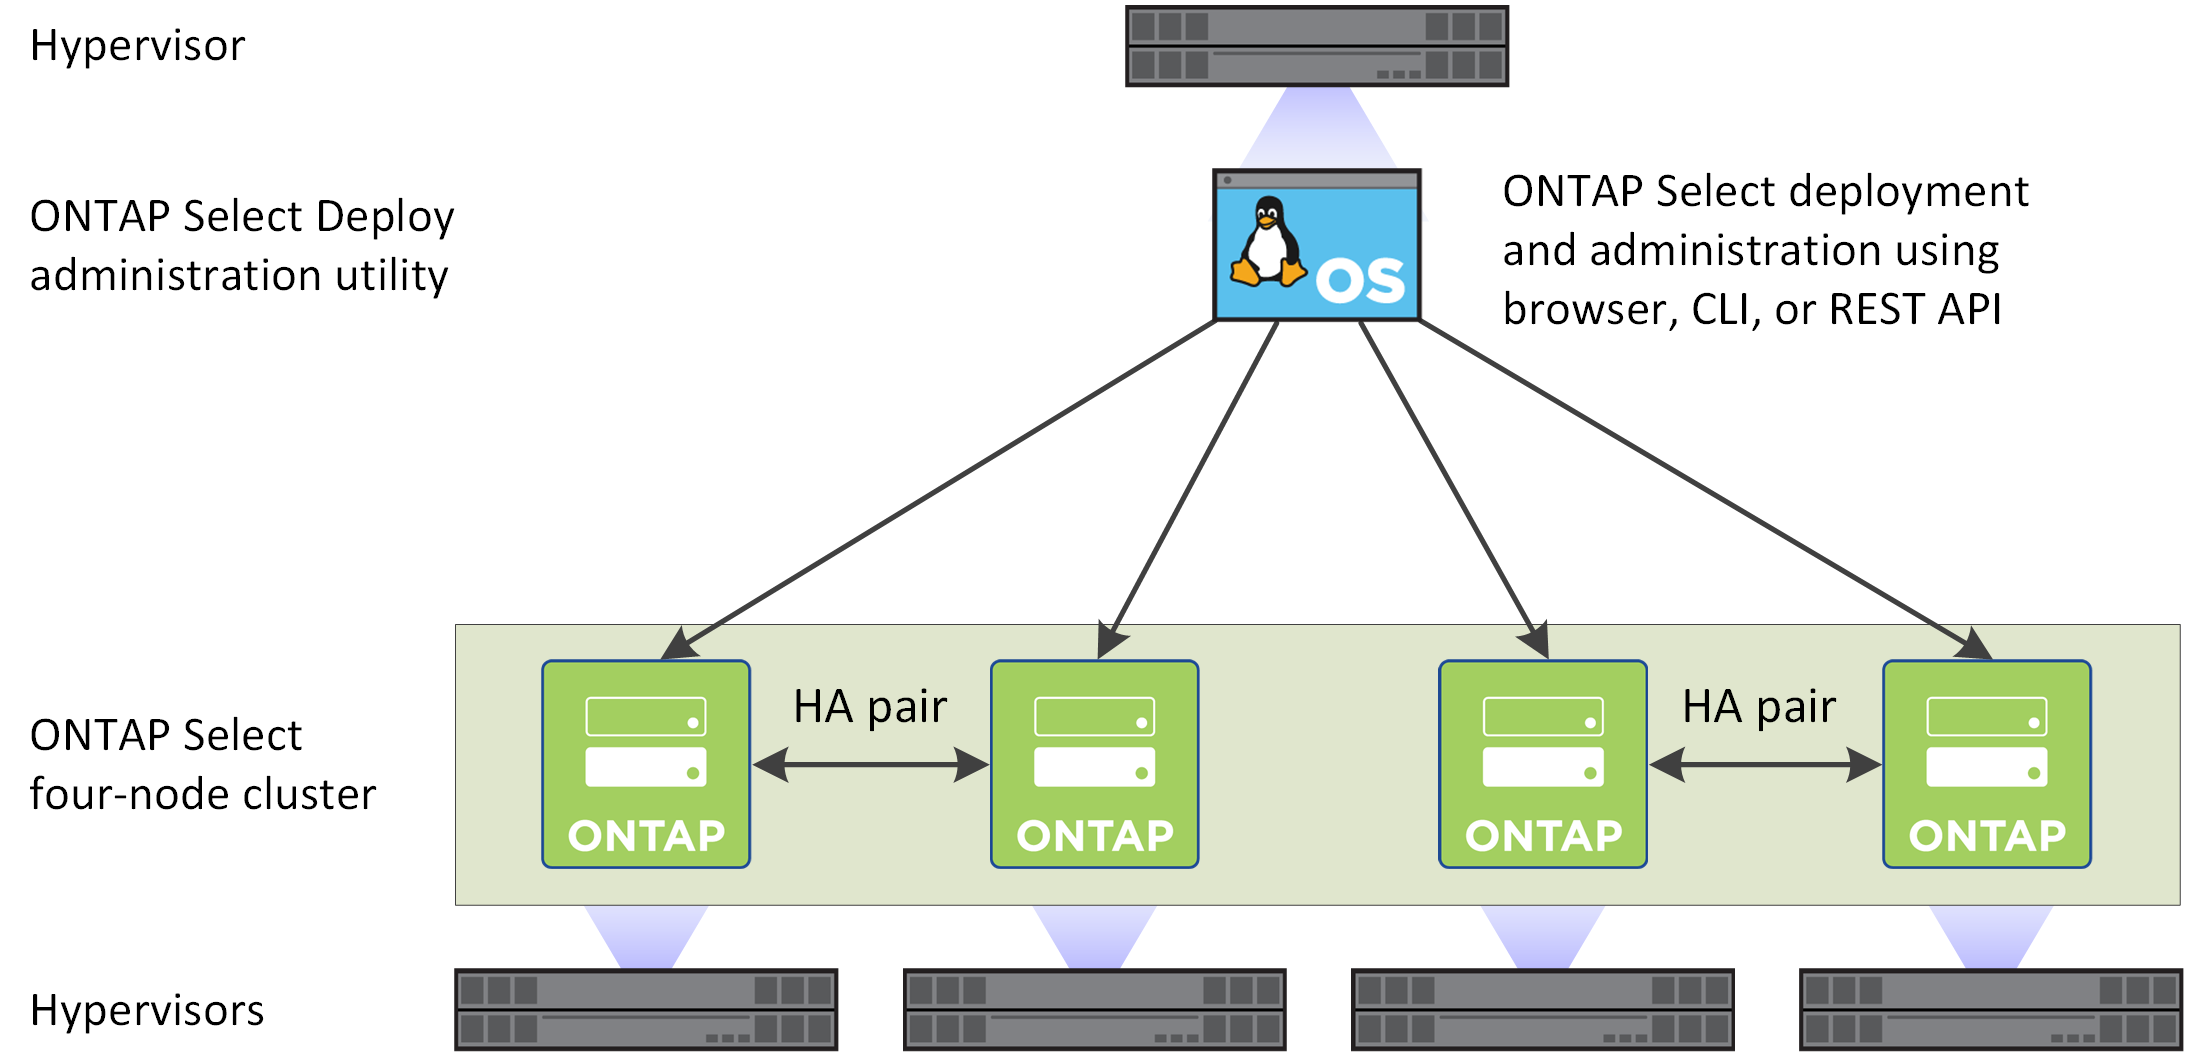 显示了使用 Deploy 管理实用程序创建的 ONTAP Select 四节点集群。